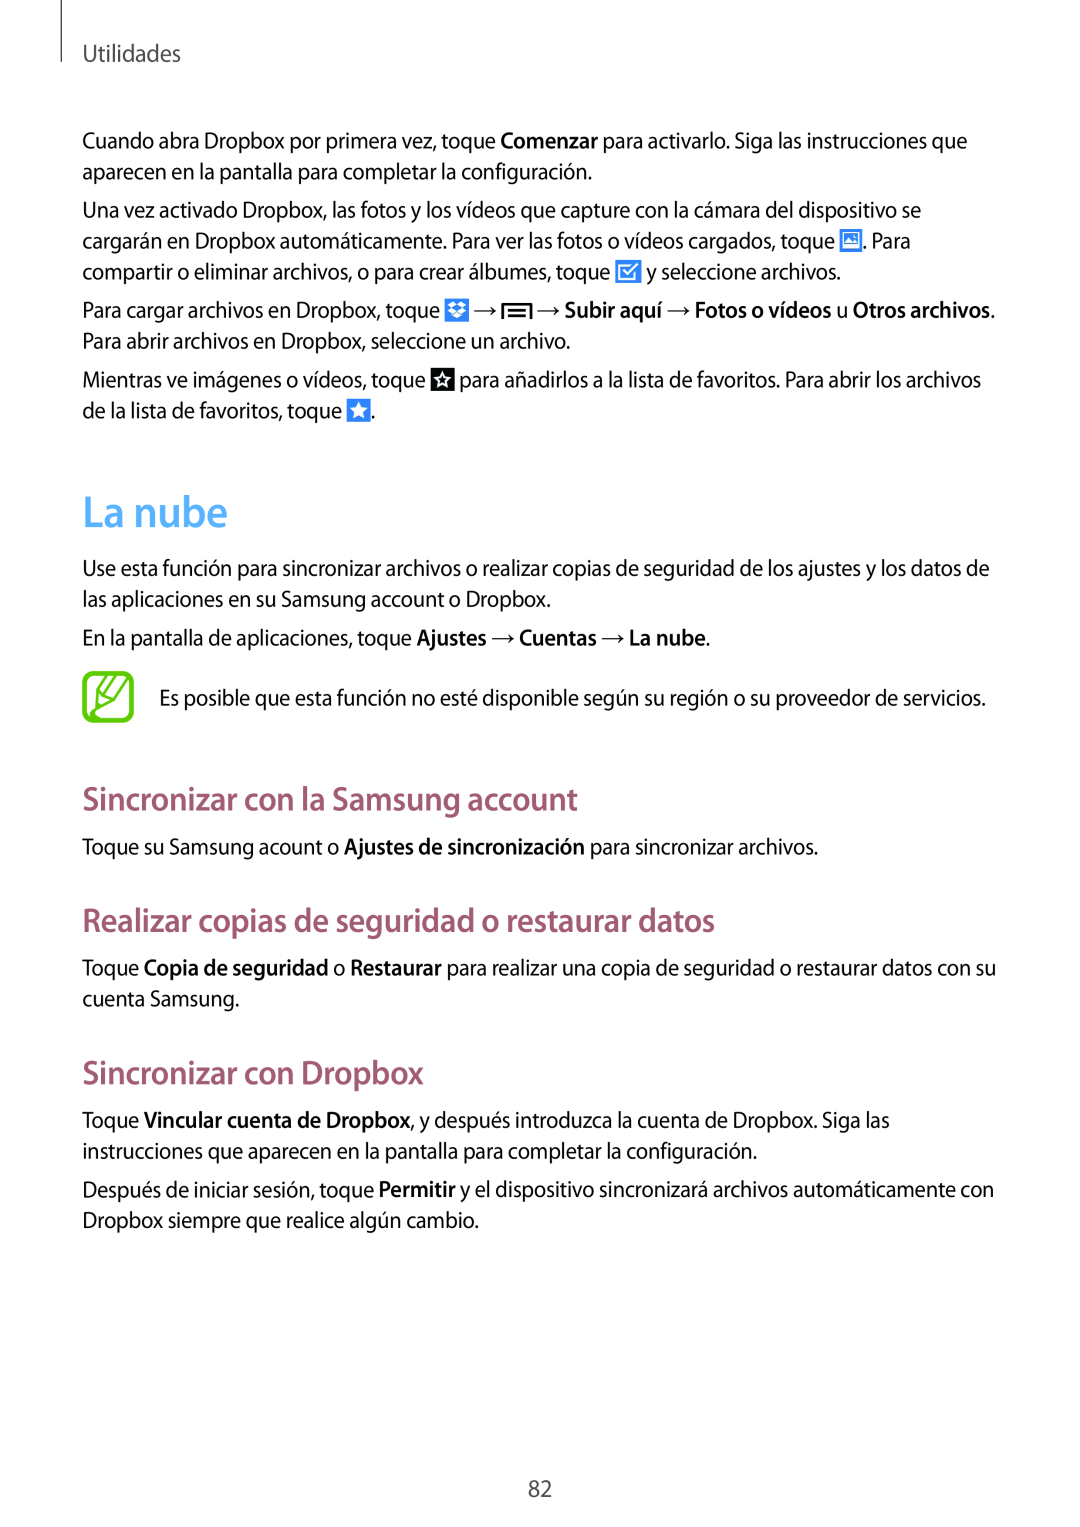 Samsung GT-S7275UWNXEF manual La nube, Sincronizar con la Samsung account, Realizar copias de seguridad o restaurar datos 